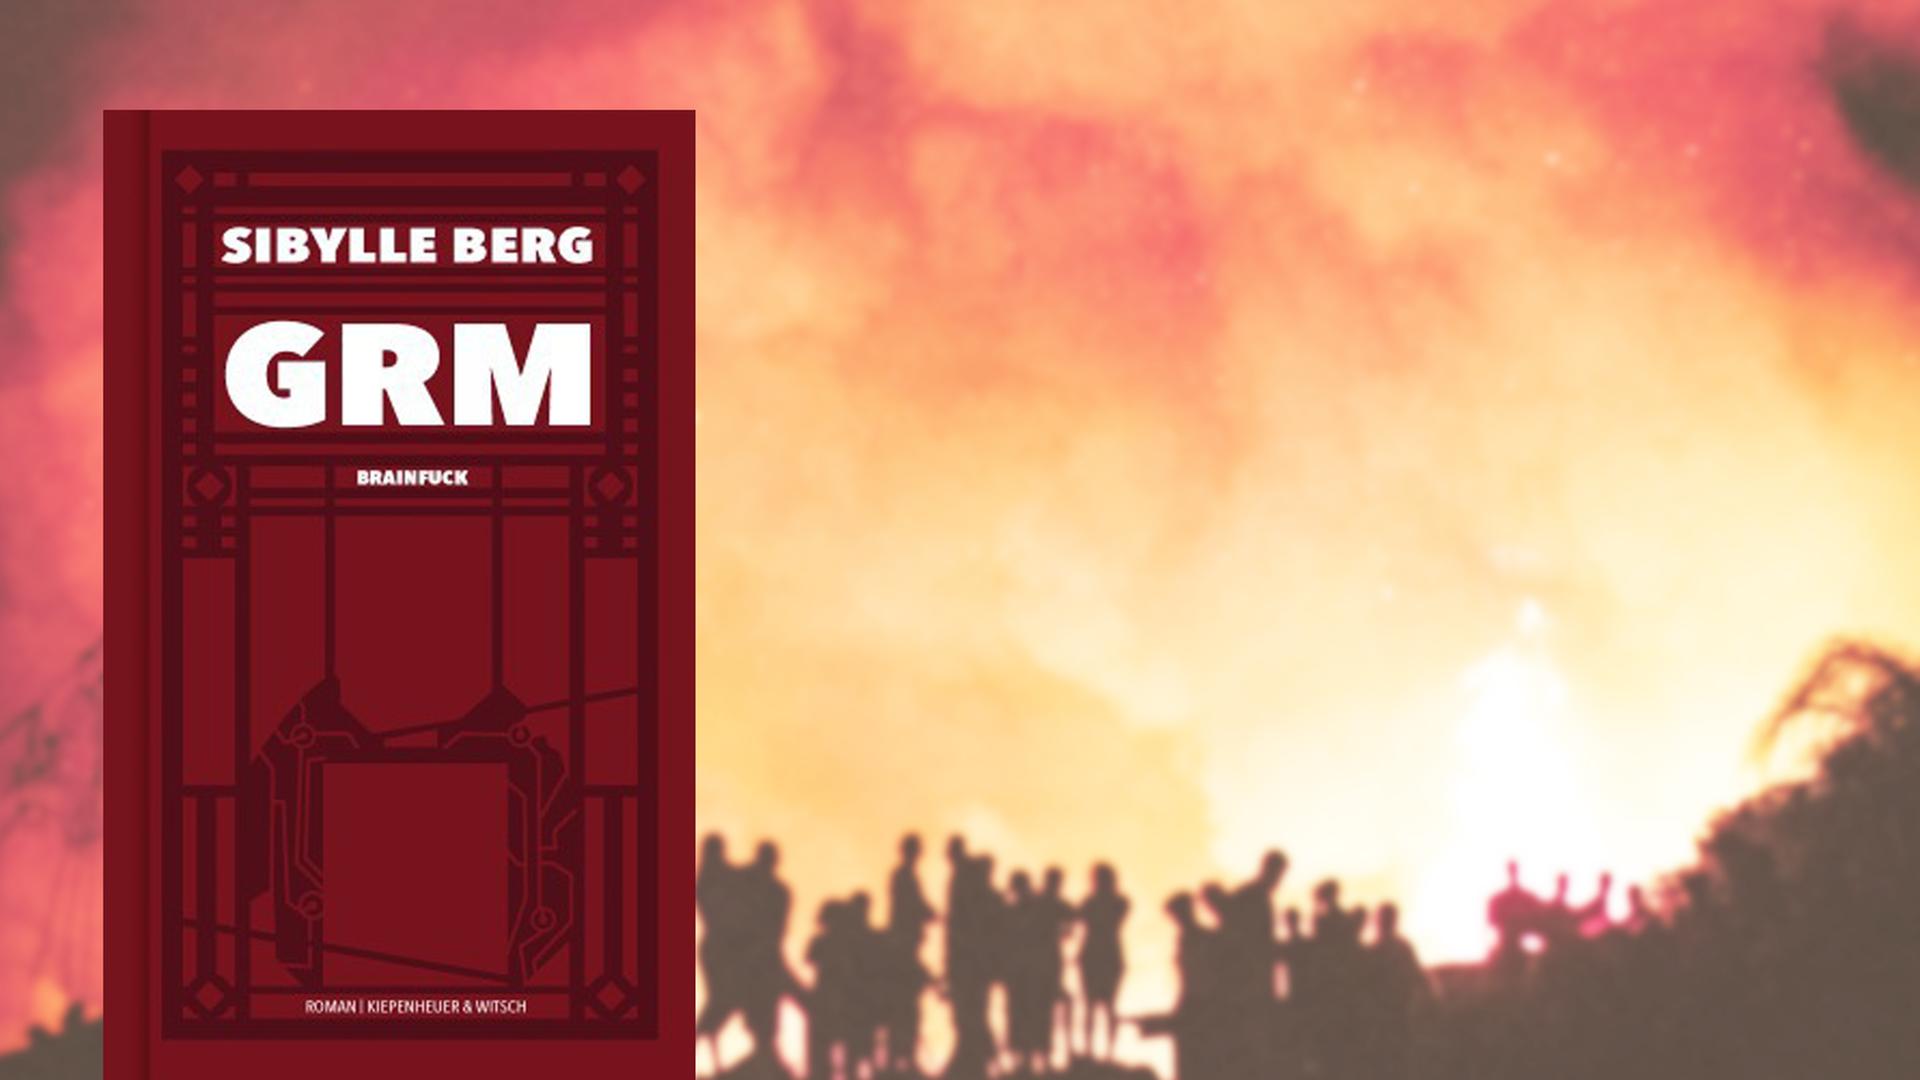 Im Vordergrund das Cover von Sibylle Bergs "GRM Brainfuck", im Hintergrund ein großes Feuer, vor dem Menschen stehen.